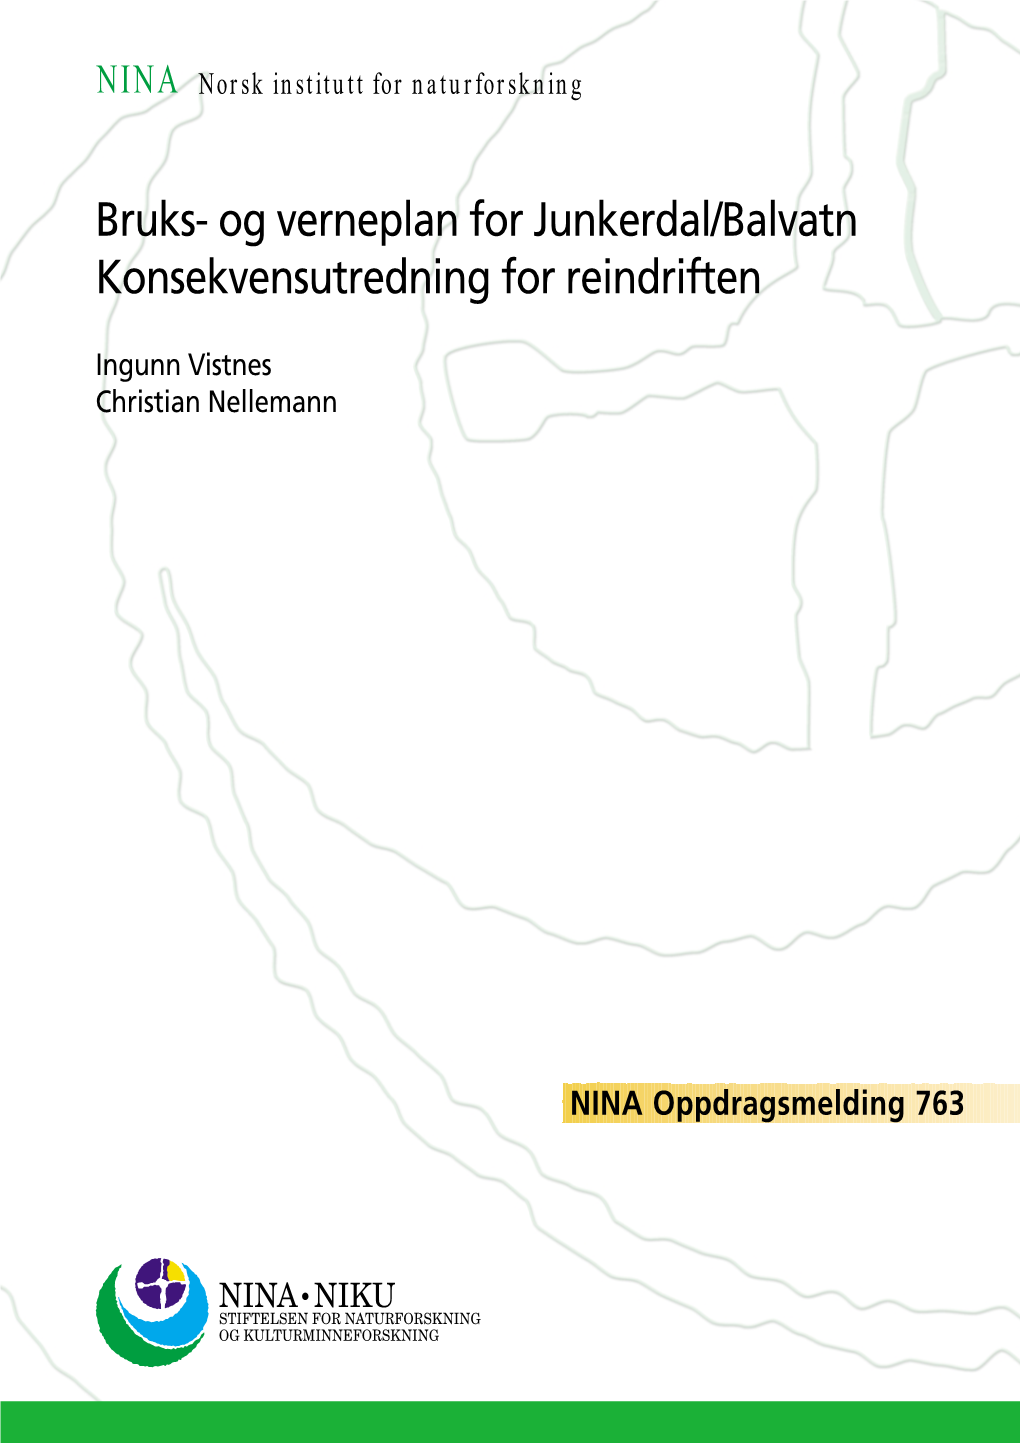 Og Verneplan for Junkerdal/Balvatn Konsekvensutredning for Reindriften